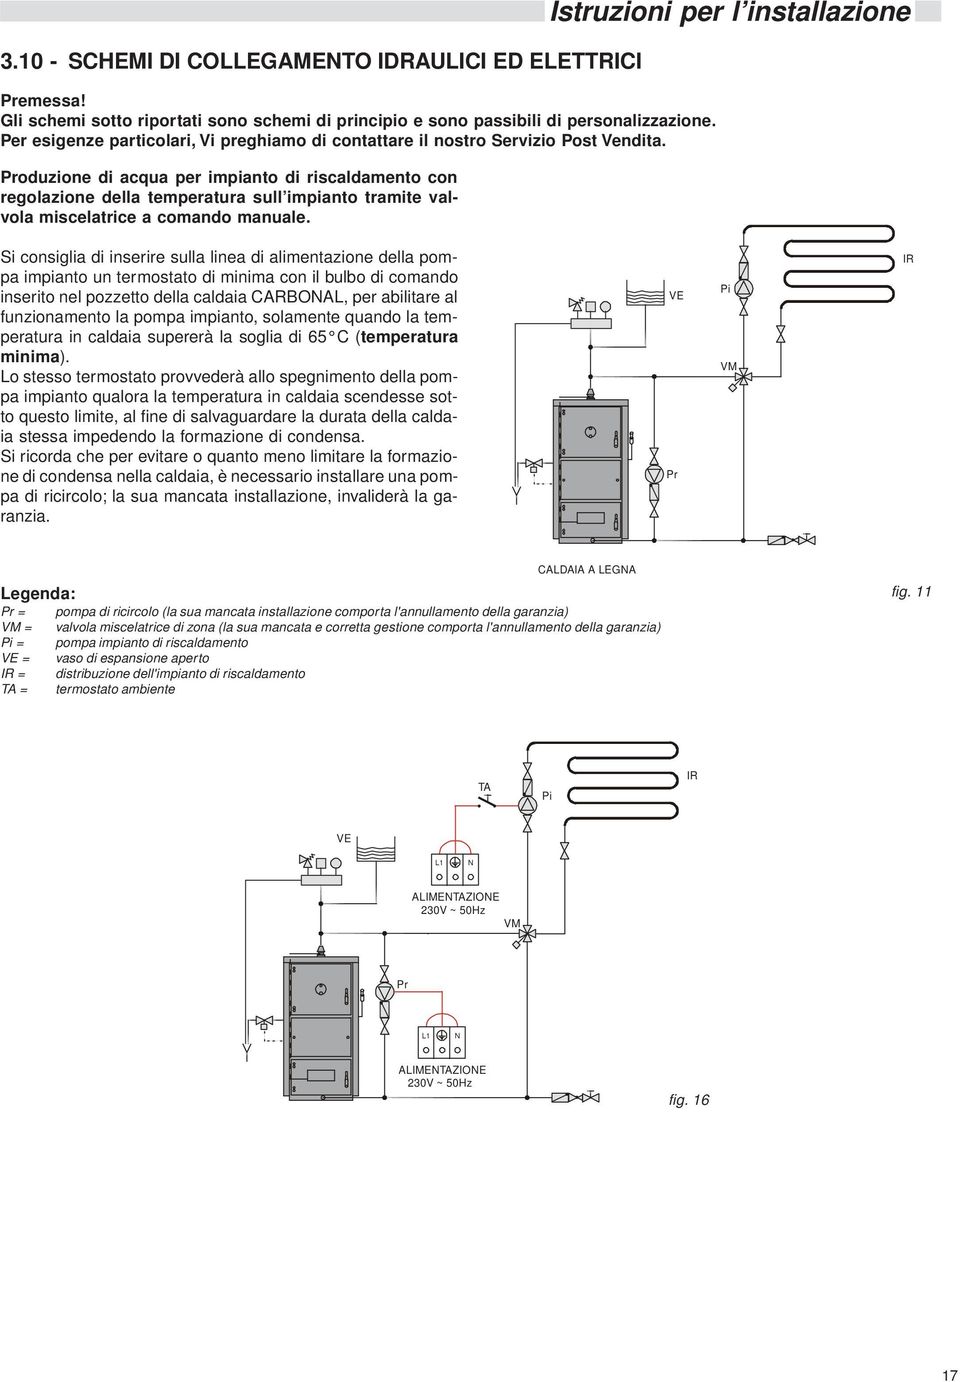 Produzione di acqua per impianto di riscaldamento con regolazione della temperatura sull impianto tramite valvola miscelatrice a comando manuale.